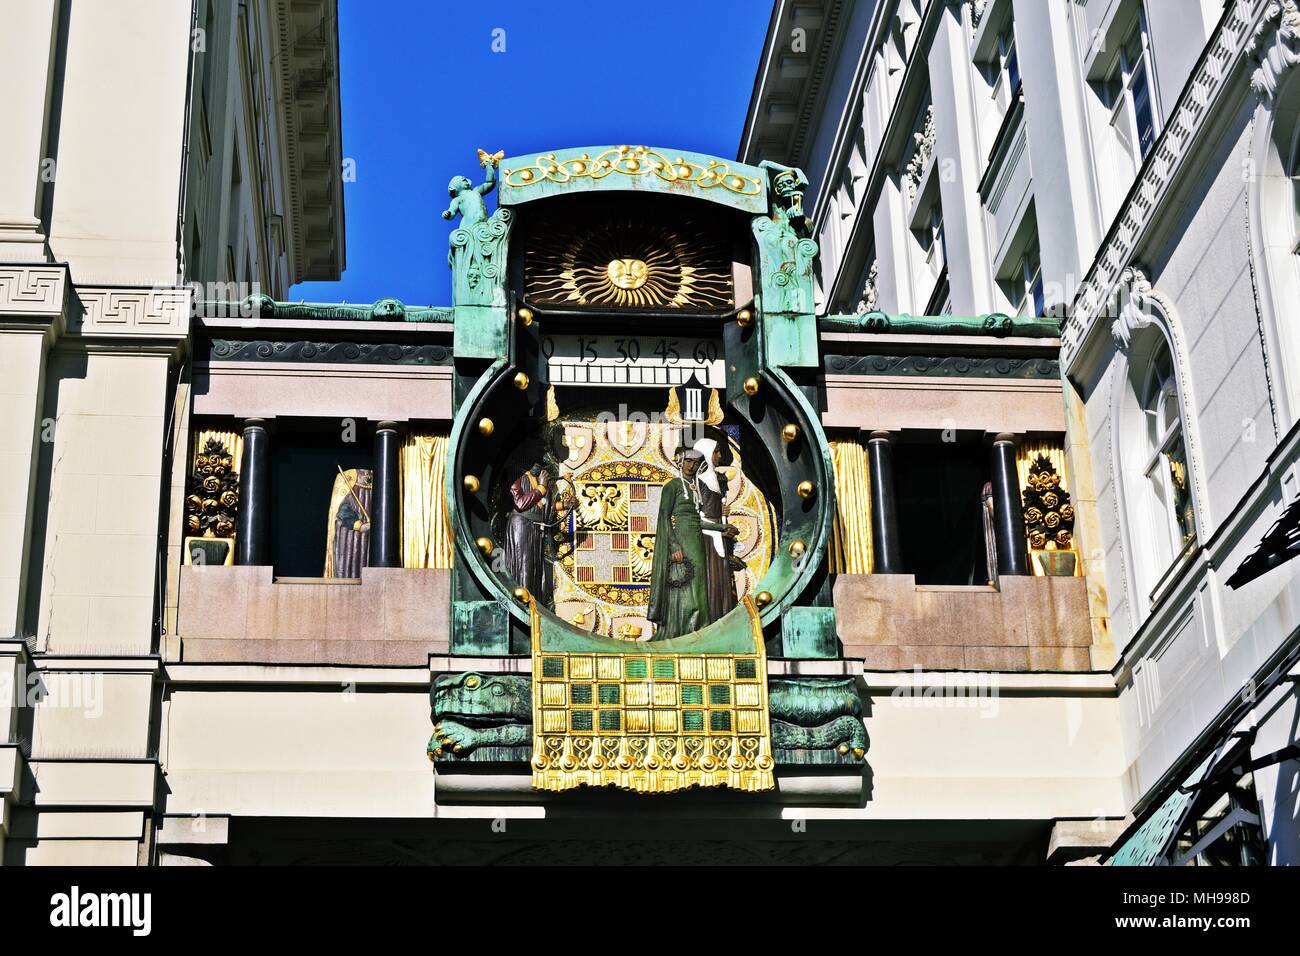 Anker Uhr a Vienna, in Austria Foto Stock